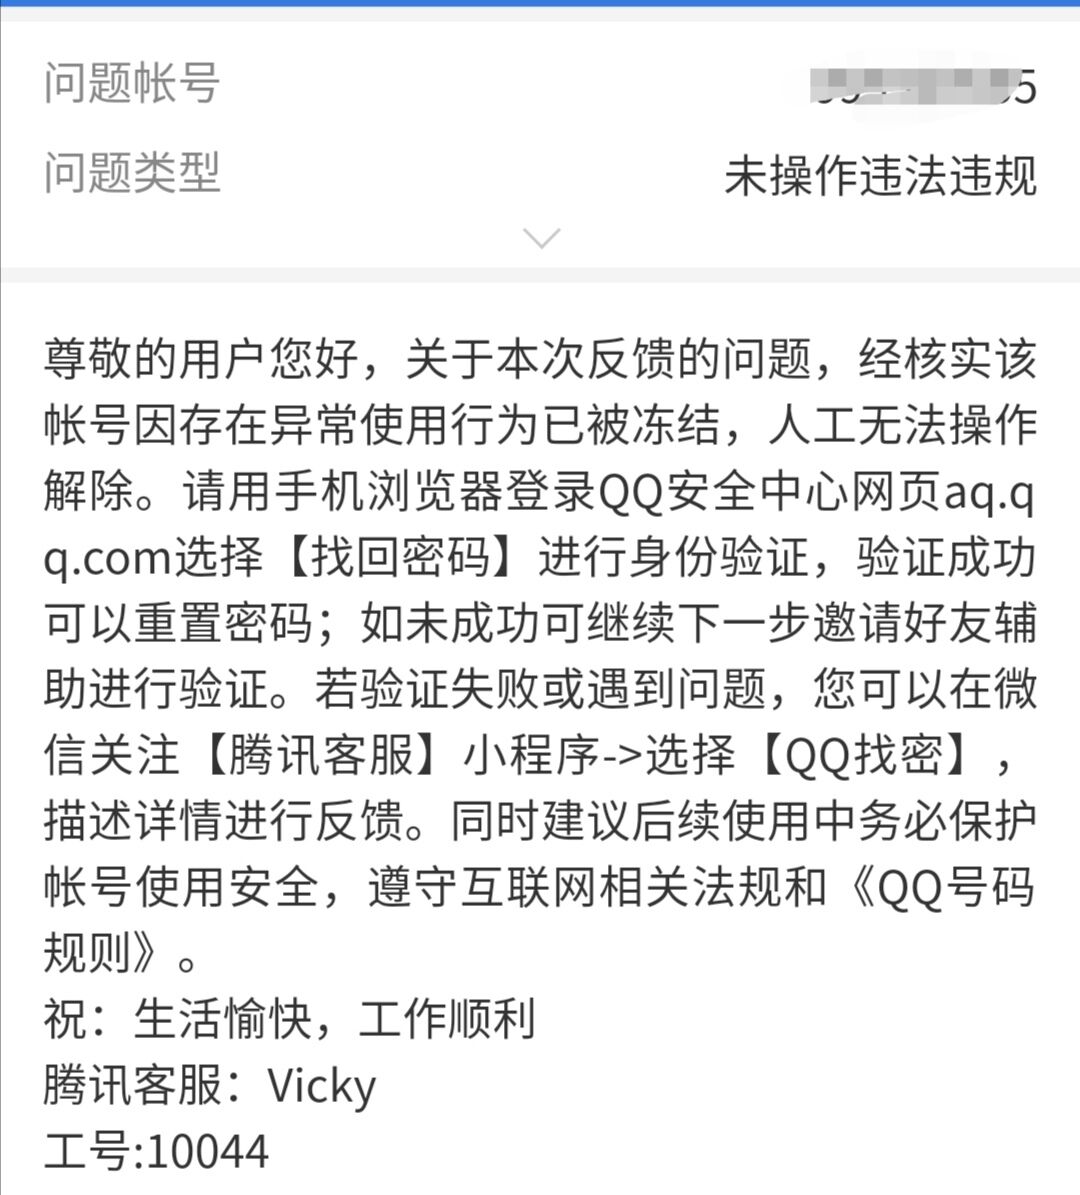 4、在QQ里我上次刚申请了一个免费的漂亮账号。申请成功但忘记账号了。